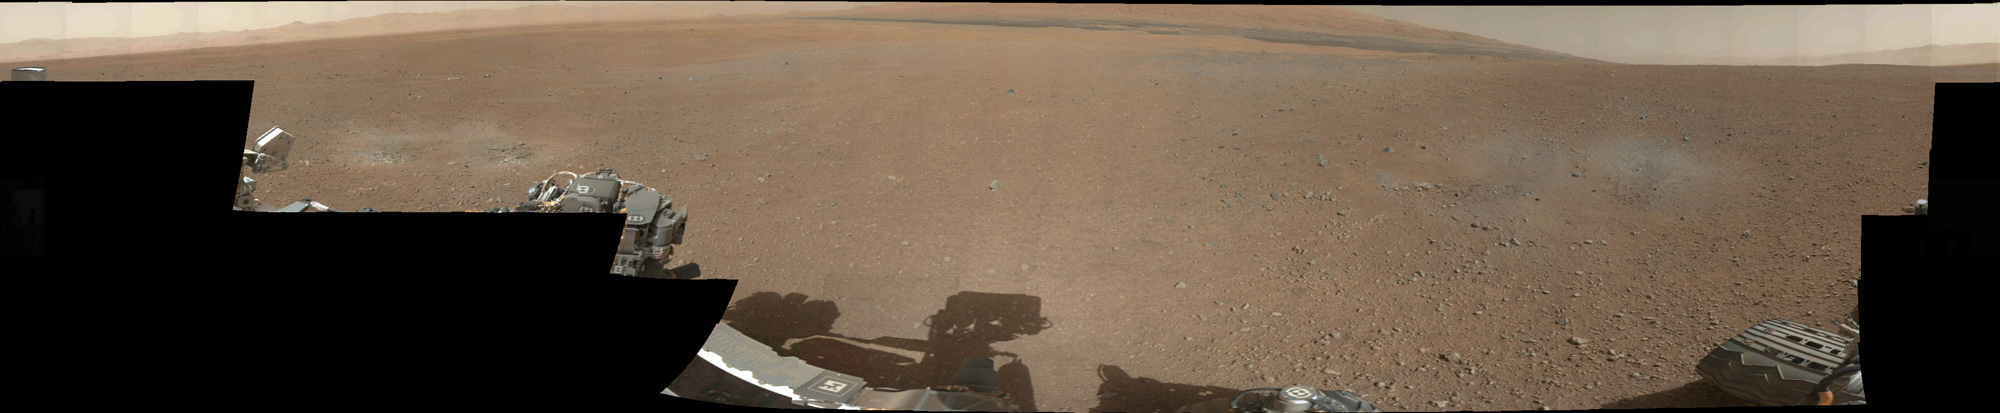 Das 360-Grad-Panorama in Farbe zeigt den Landeplatz von Curiosity im Krater Gale.